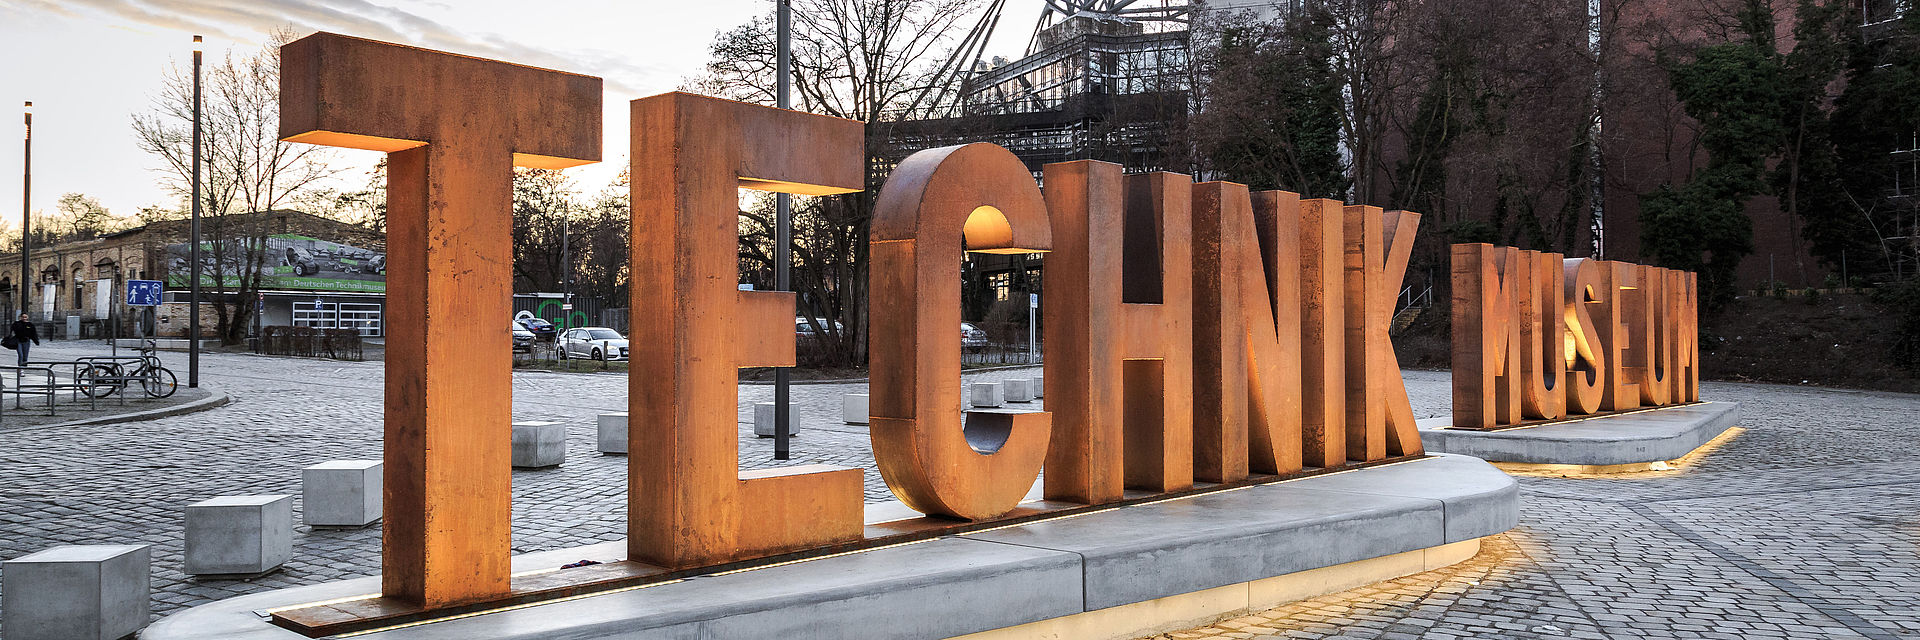 Auf einem gepflasterten Platz sieht man eine aus Metallbuchstaben erstellte Wortskulptur, die sich „Technik Museum“ liest. Im Hintergrund die Silhouette des Technikmuseums. 